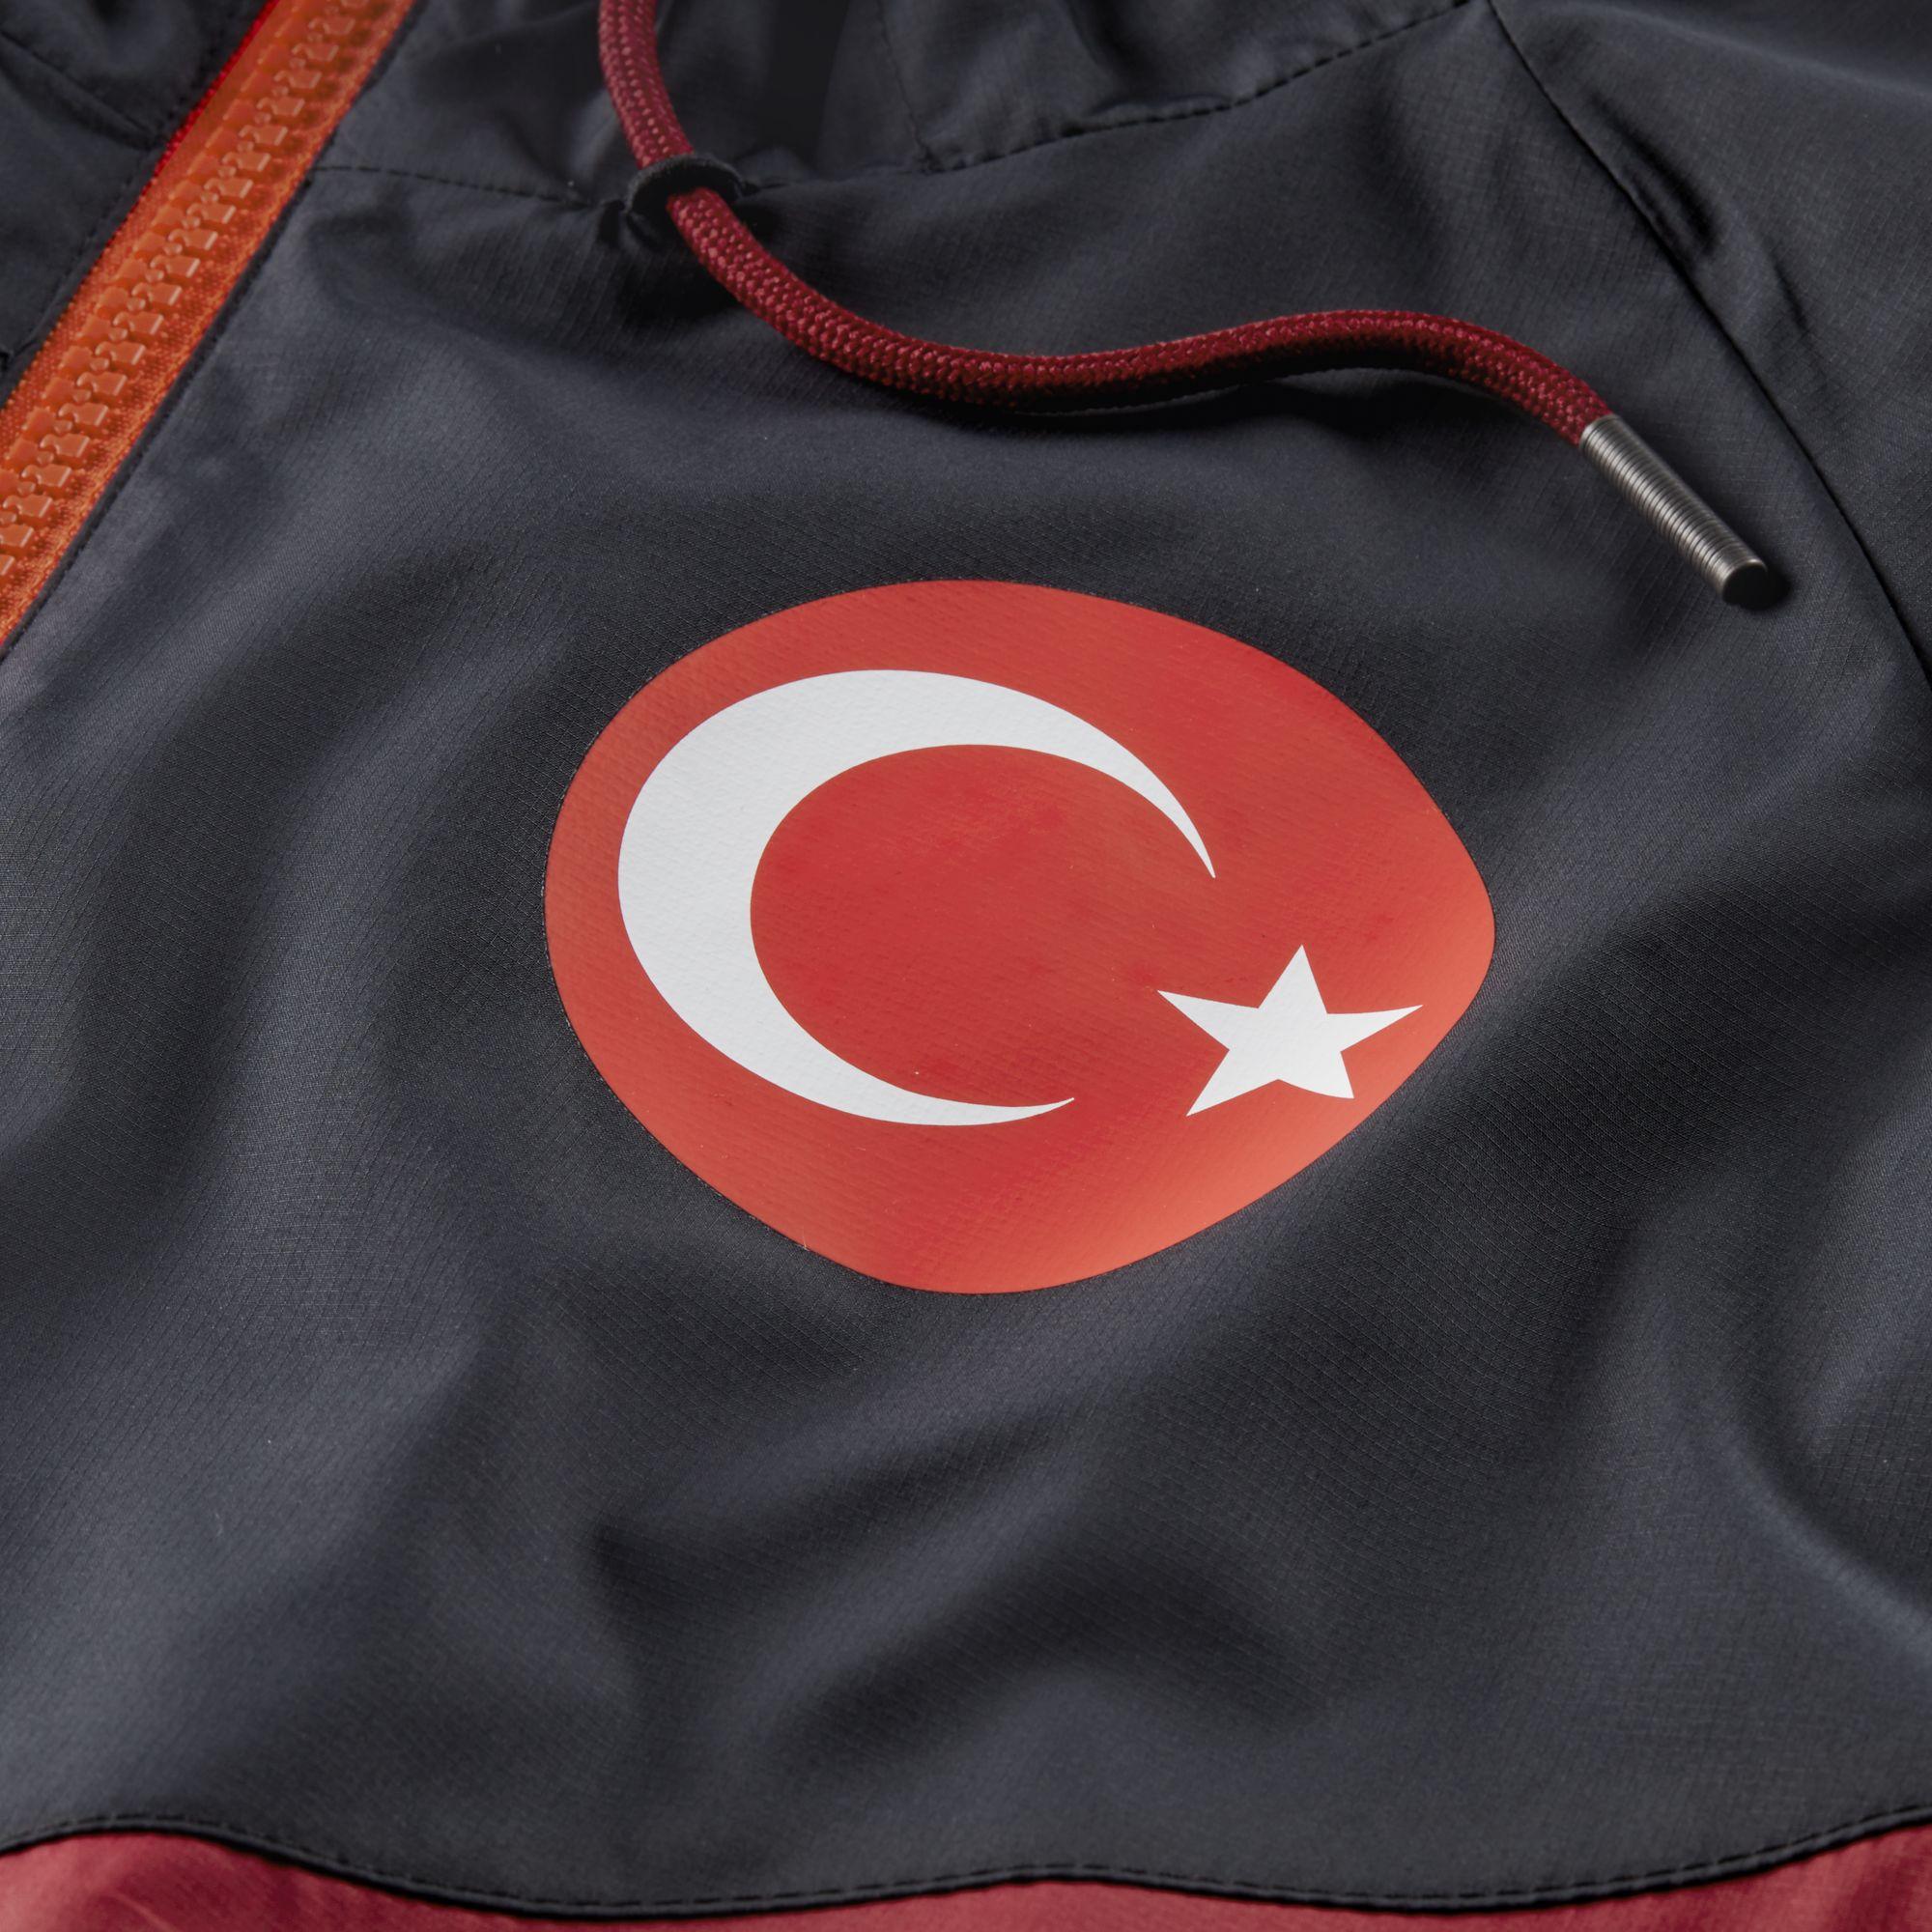 Найк турция сайт. Nike Turkey. Найк Турция. Nike в Турции. Найк из Турции.